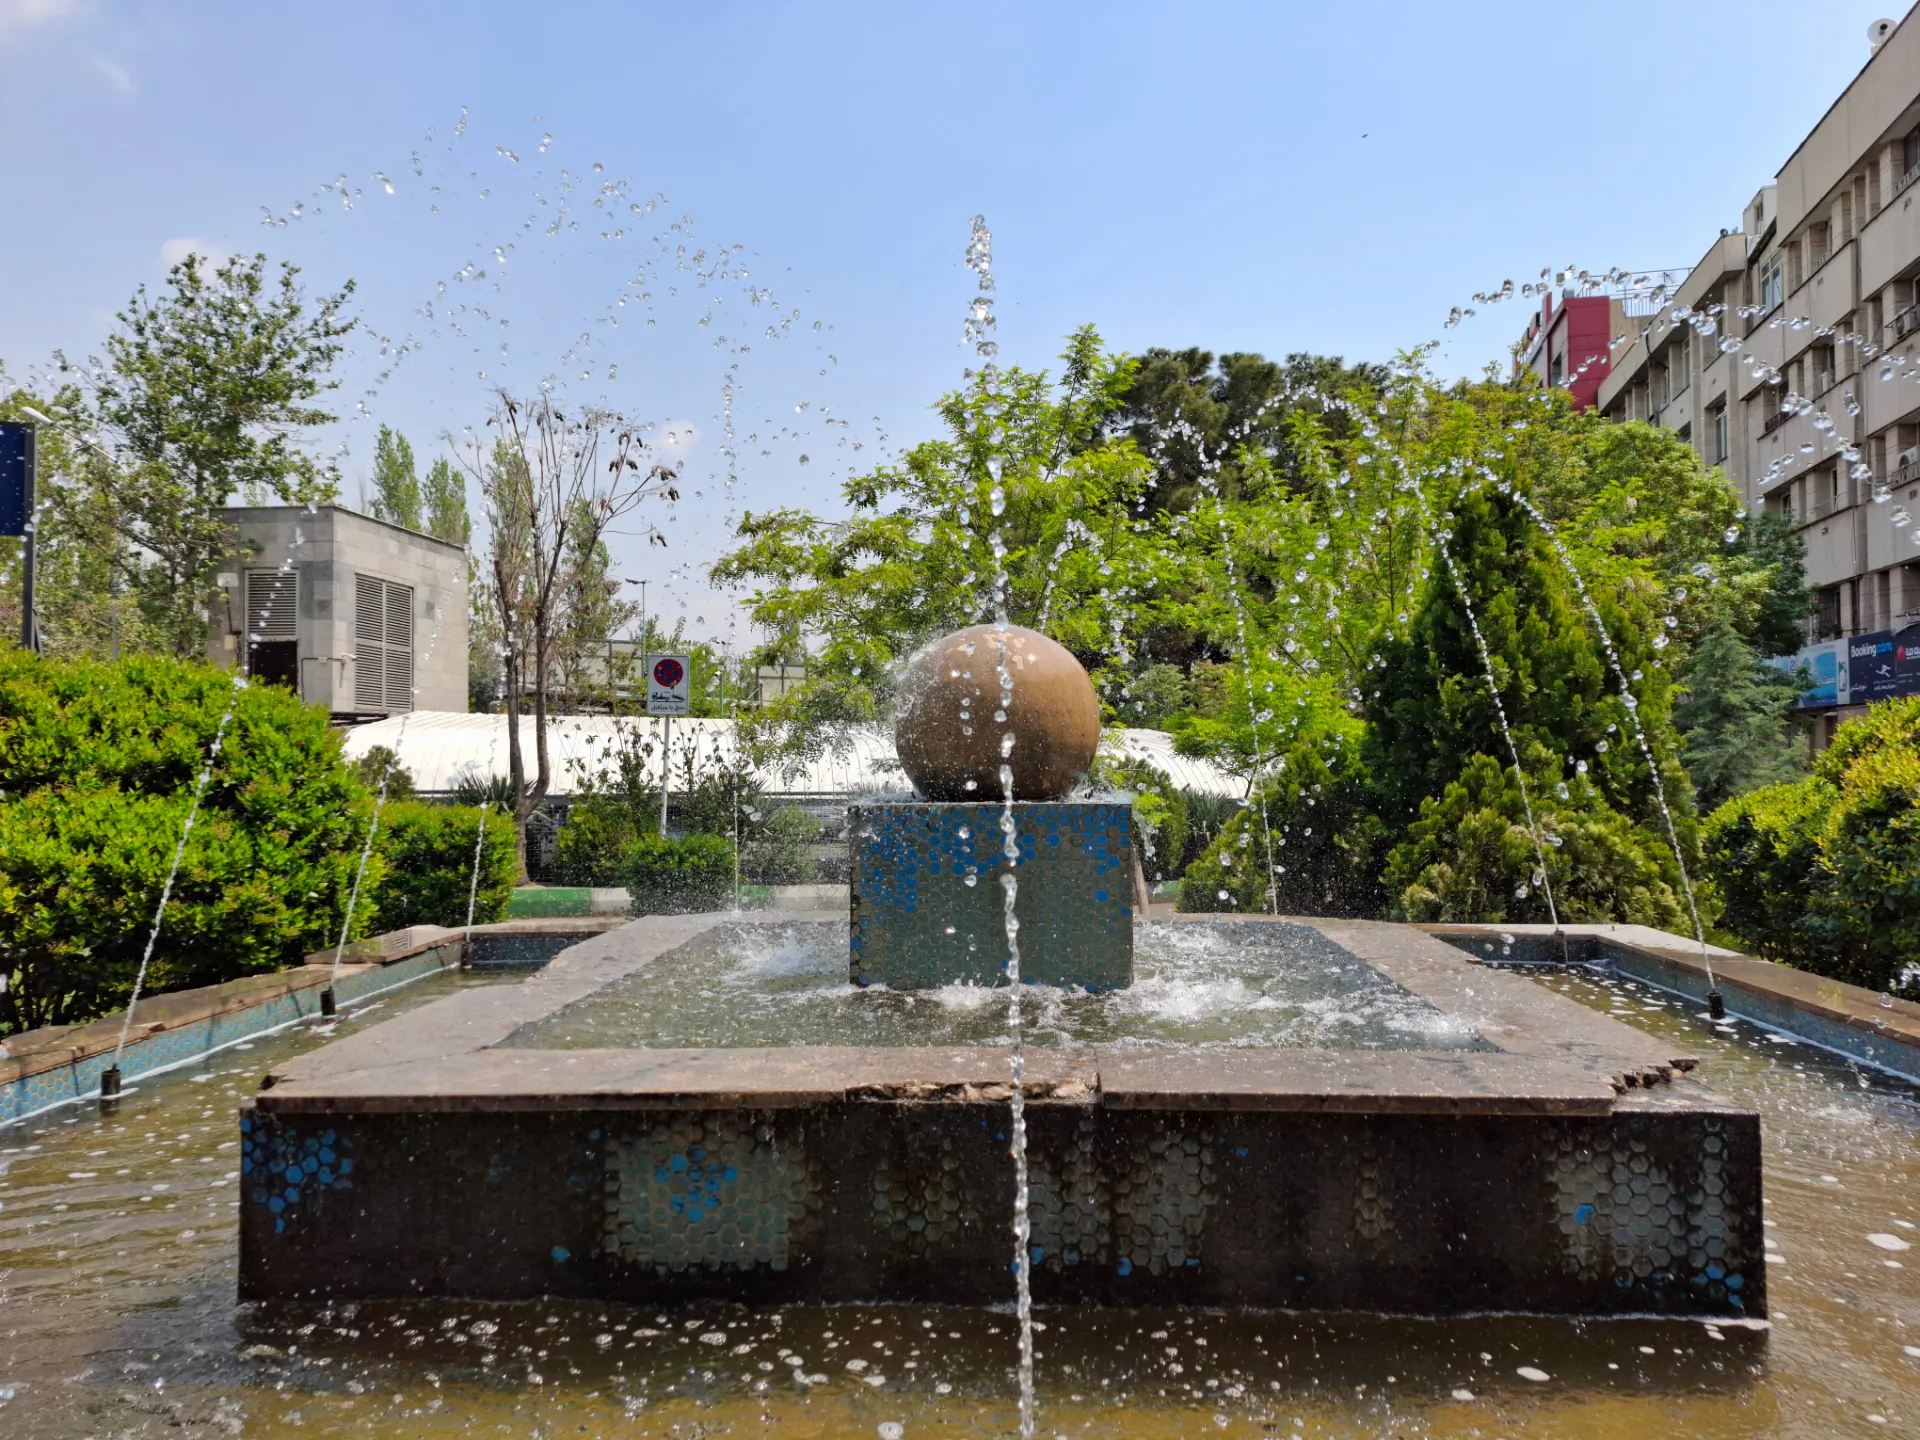 حوض آب در یک پارک تهران